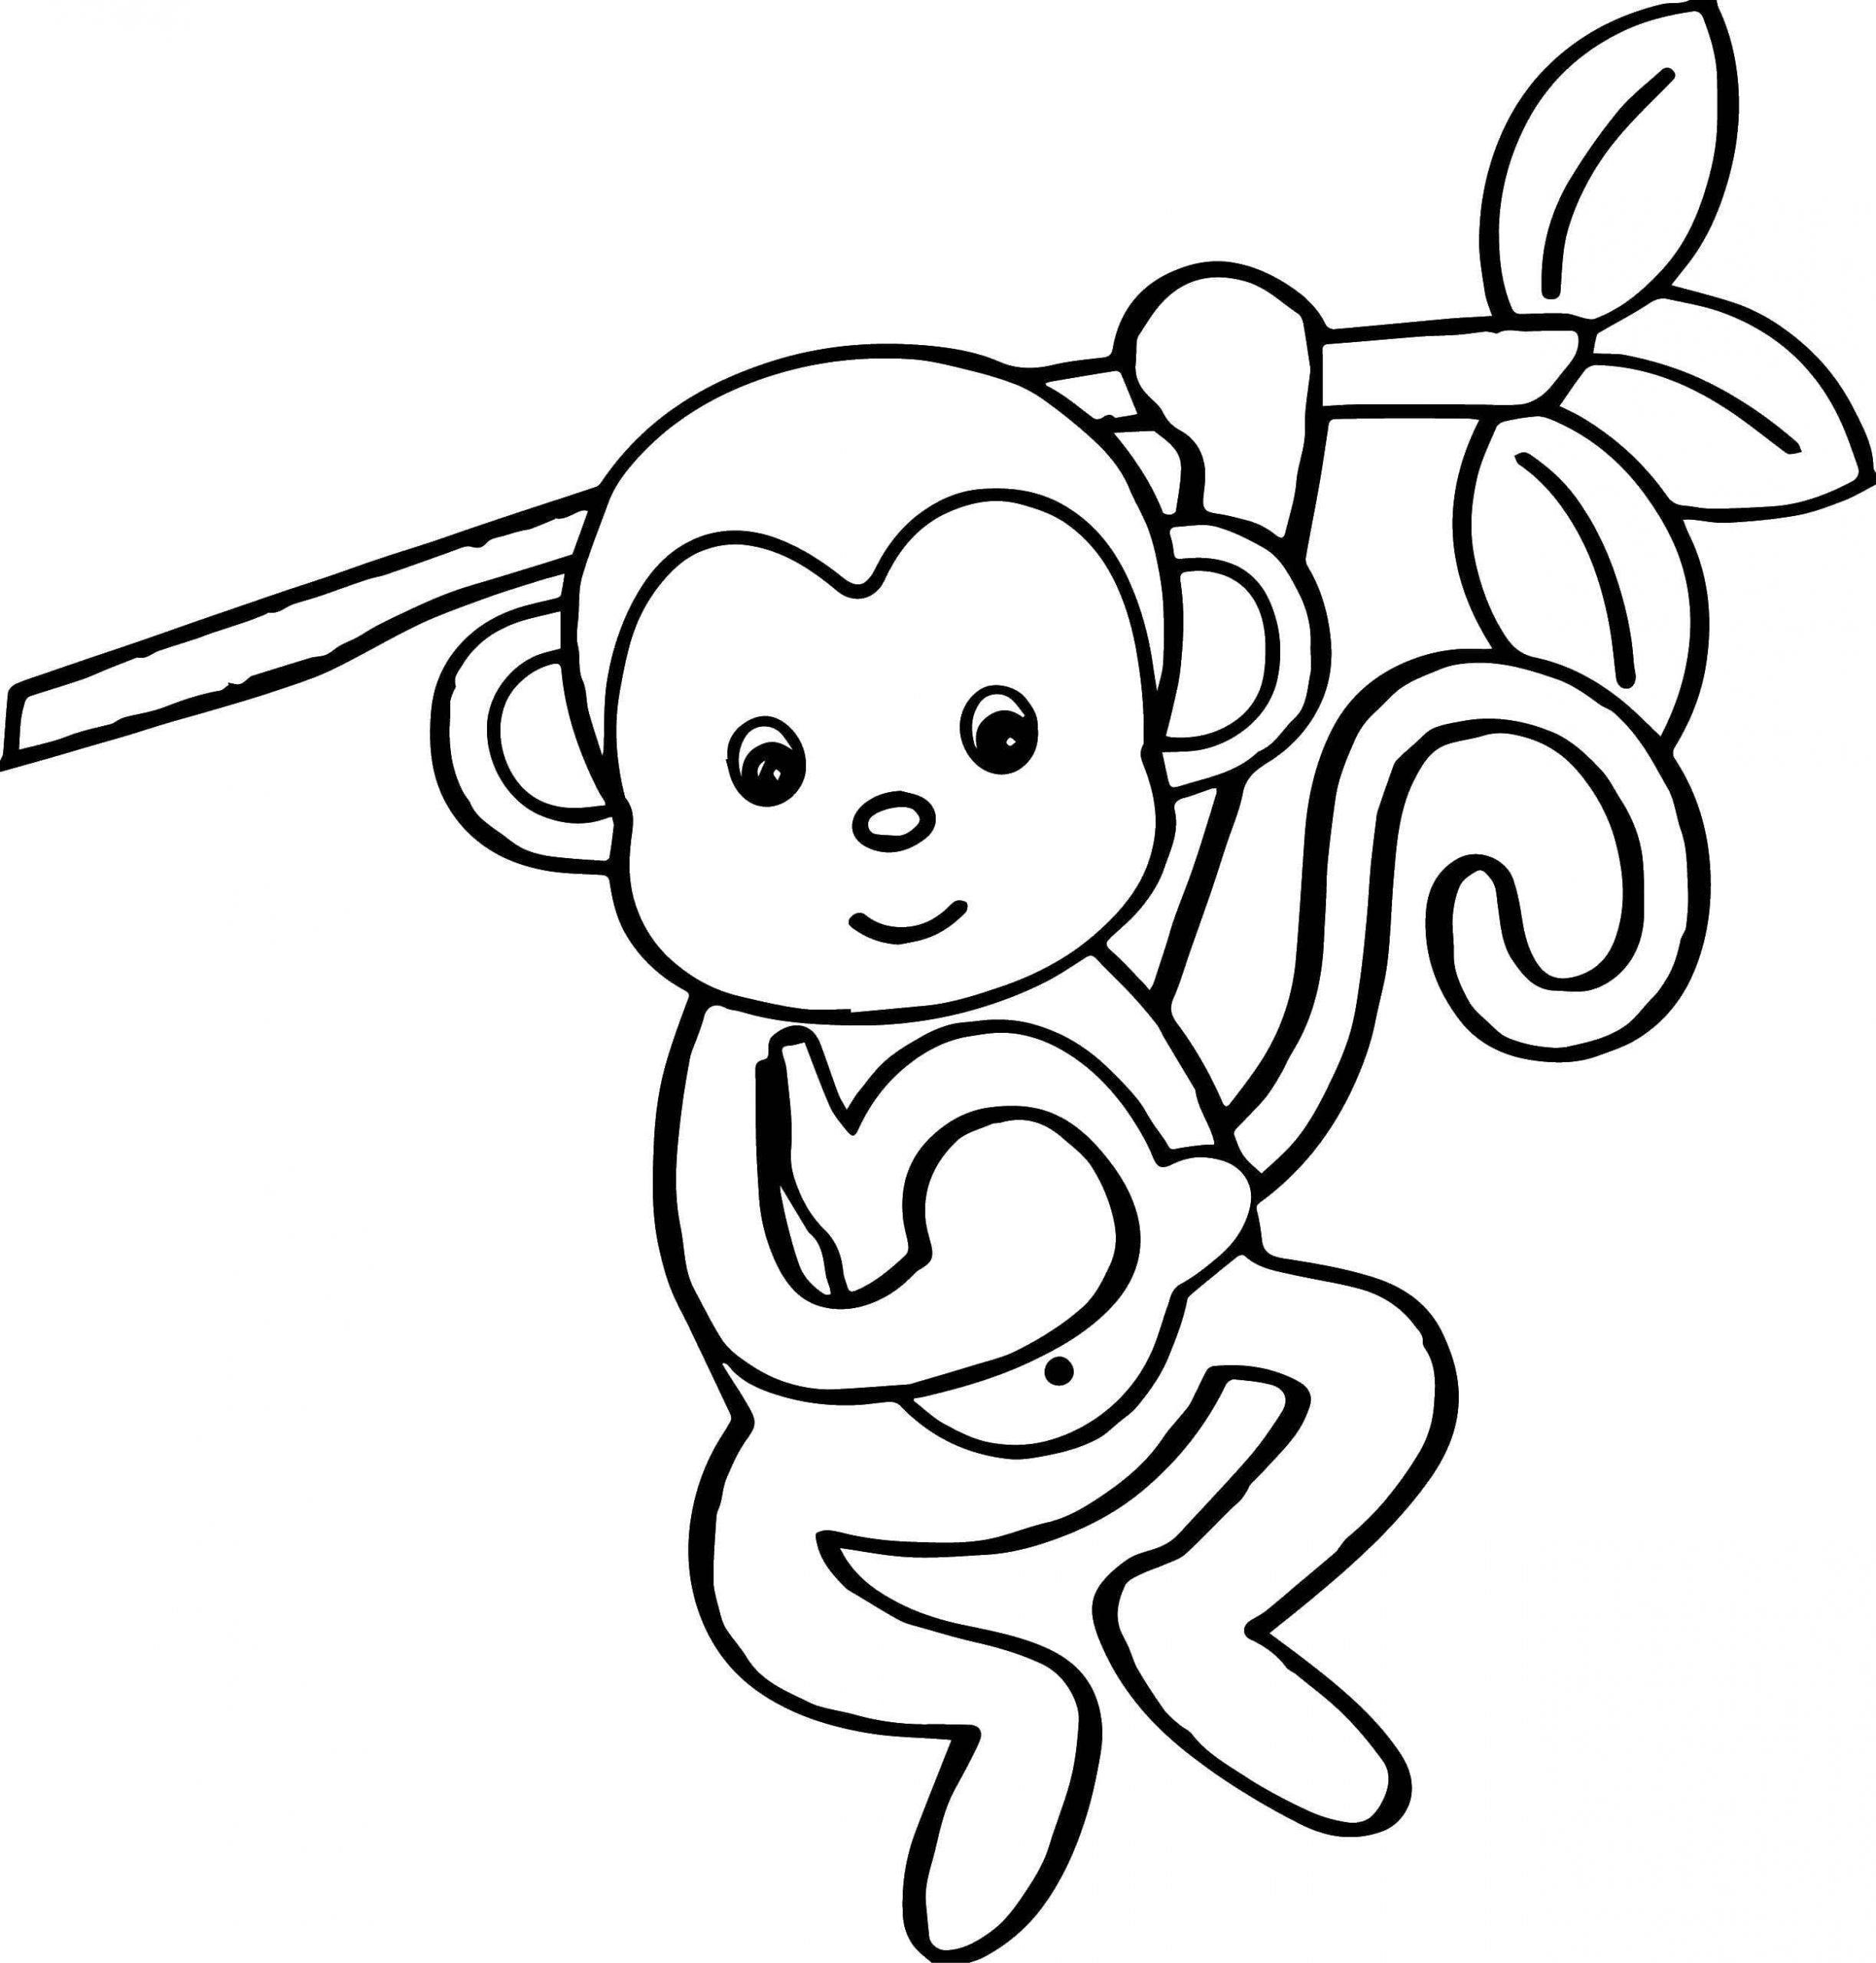 Na větvi visela opice omalovánka